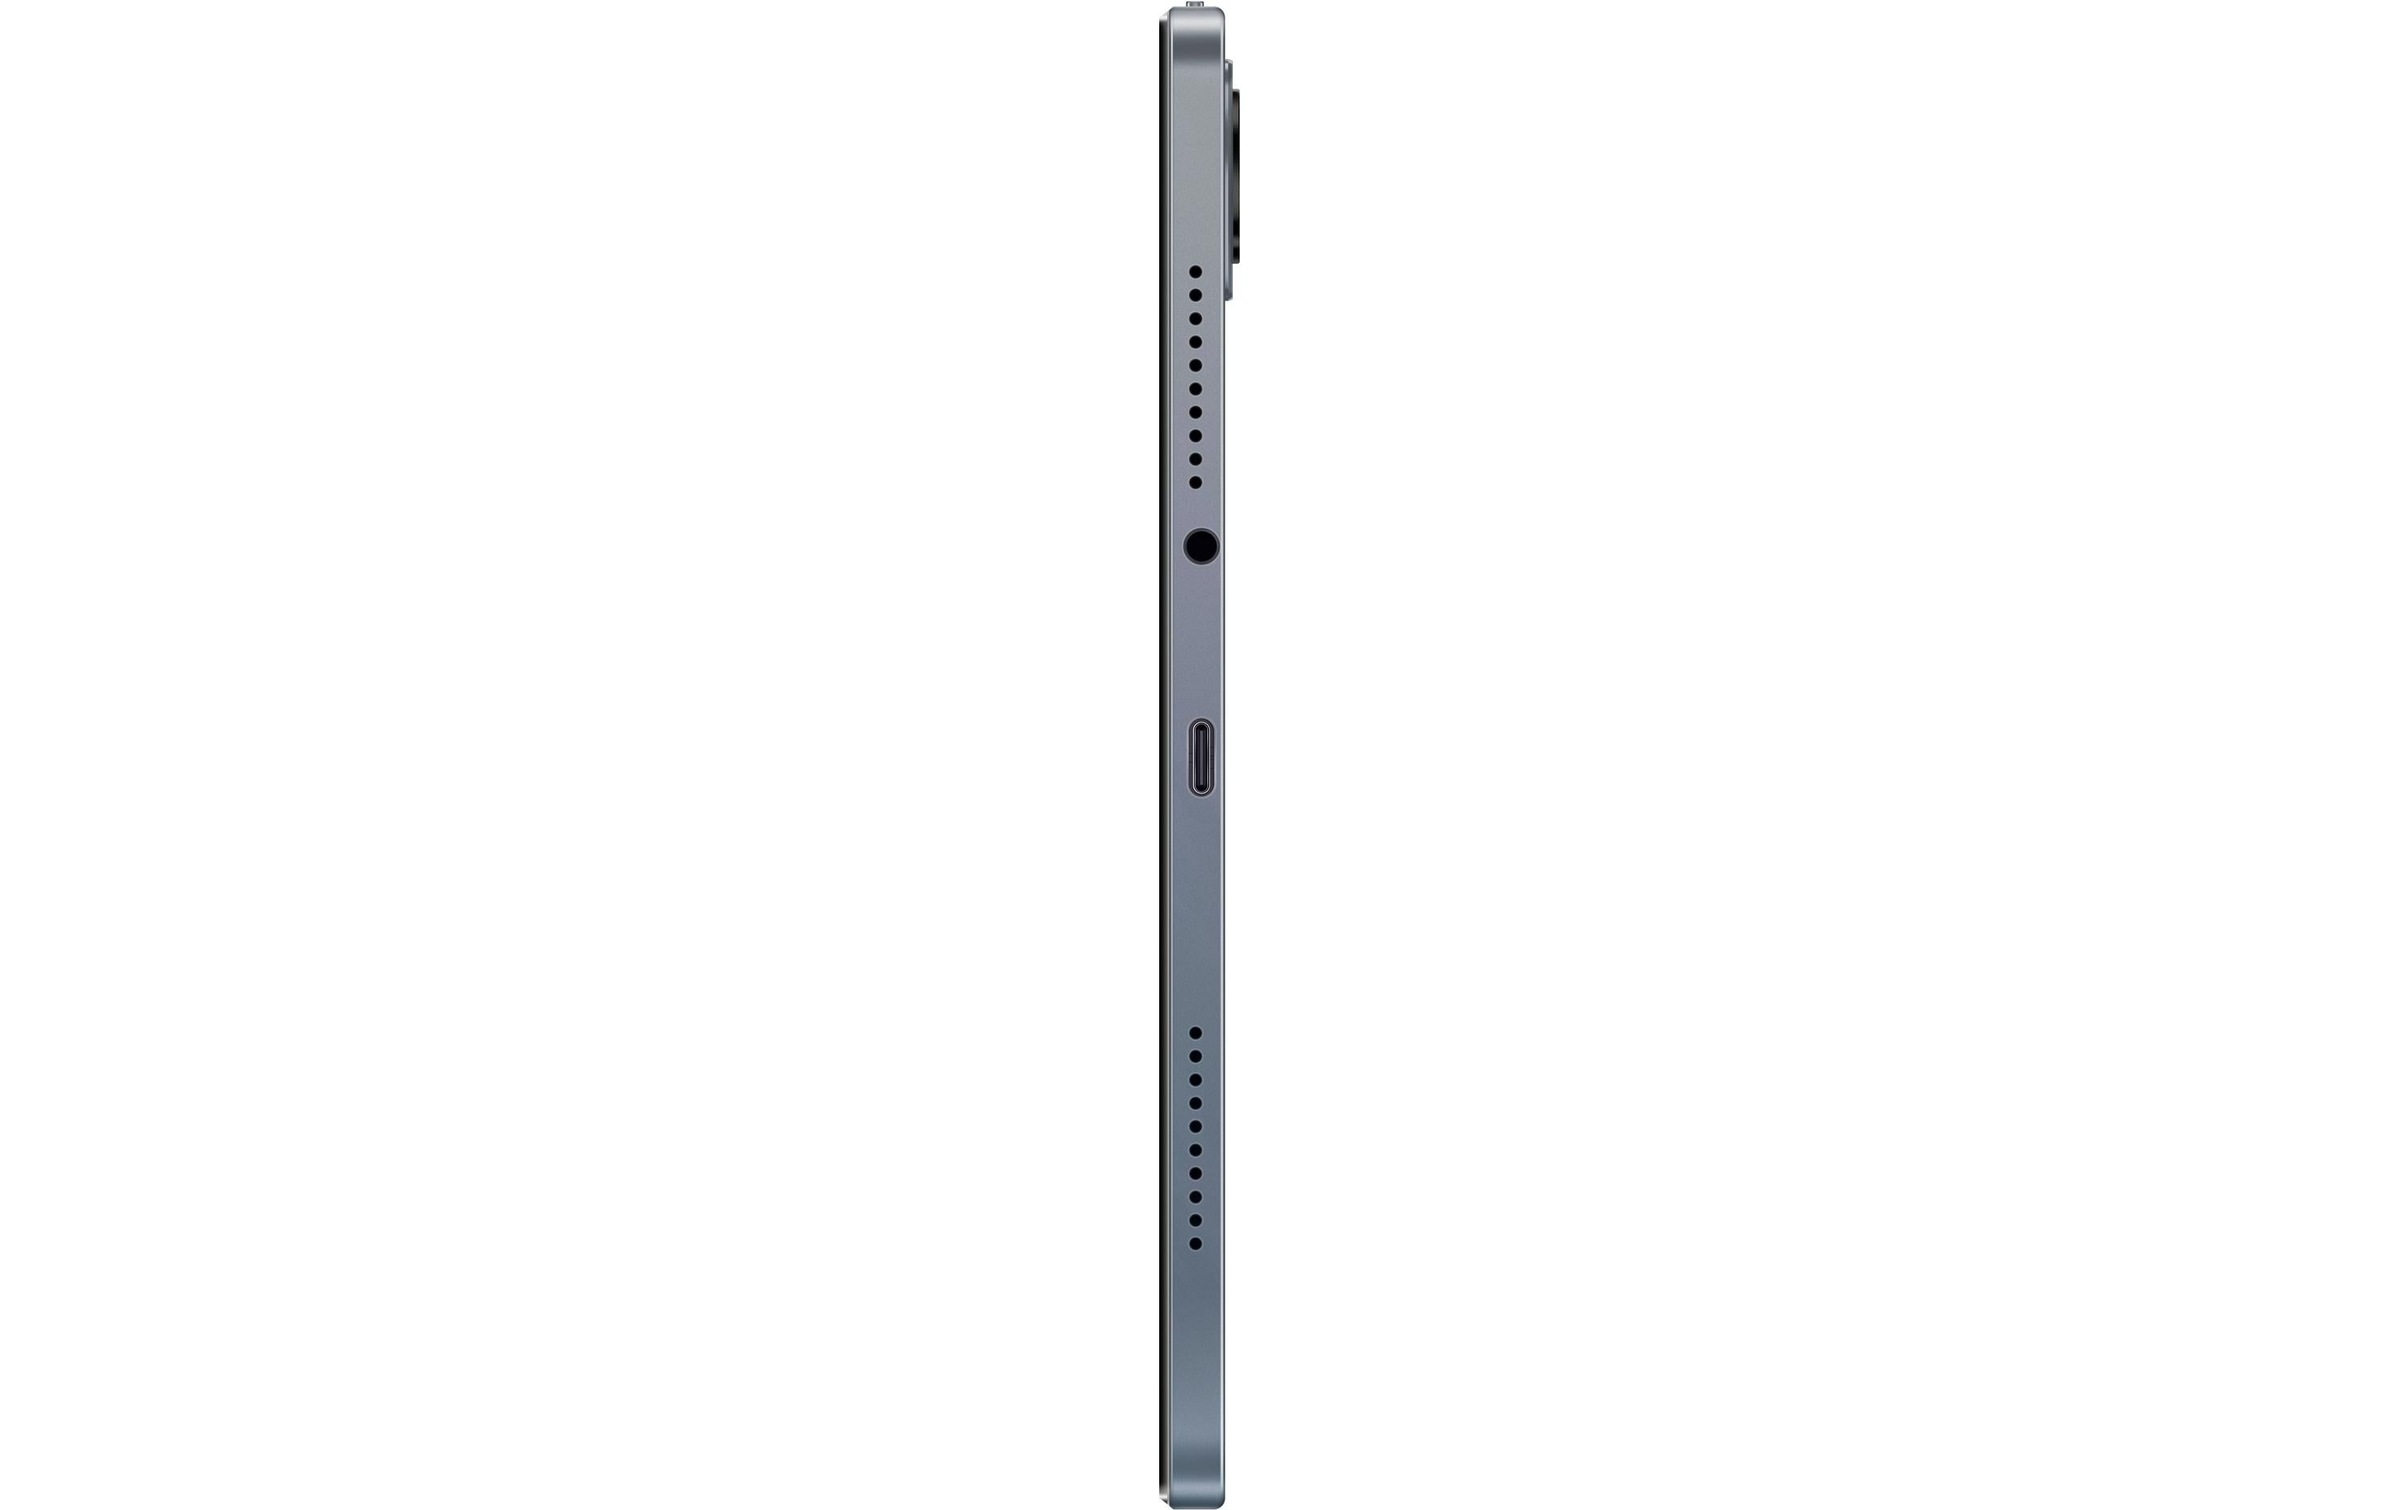 Xiaomi Tablet »Redmi Pad SE 128 GB Grau«, (Android)